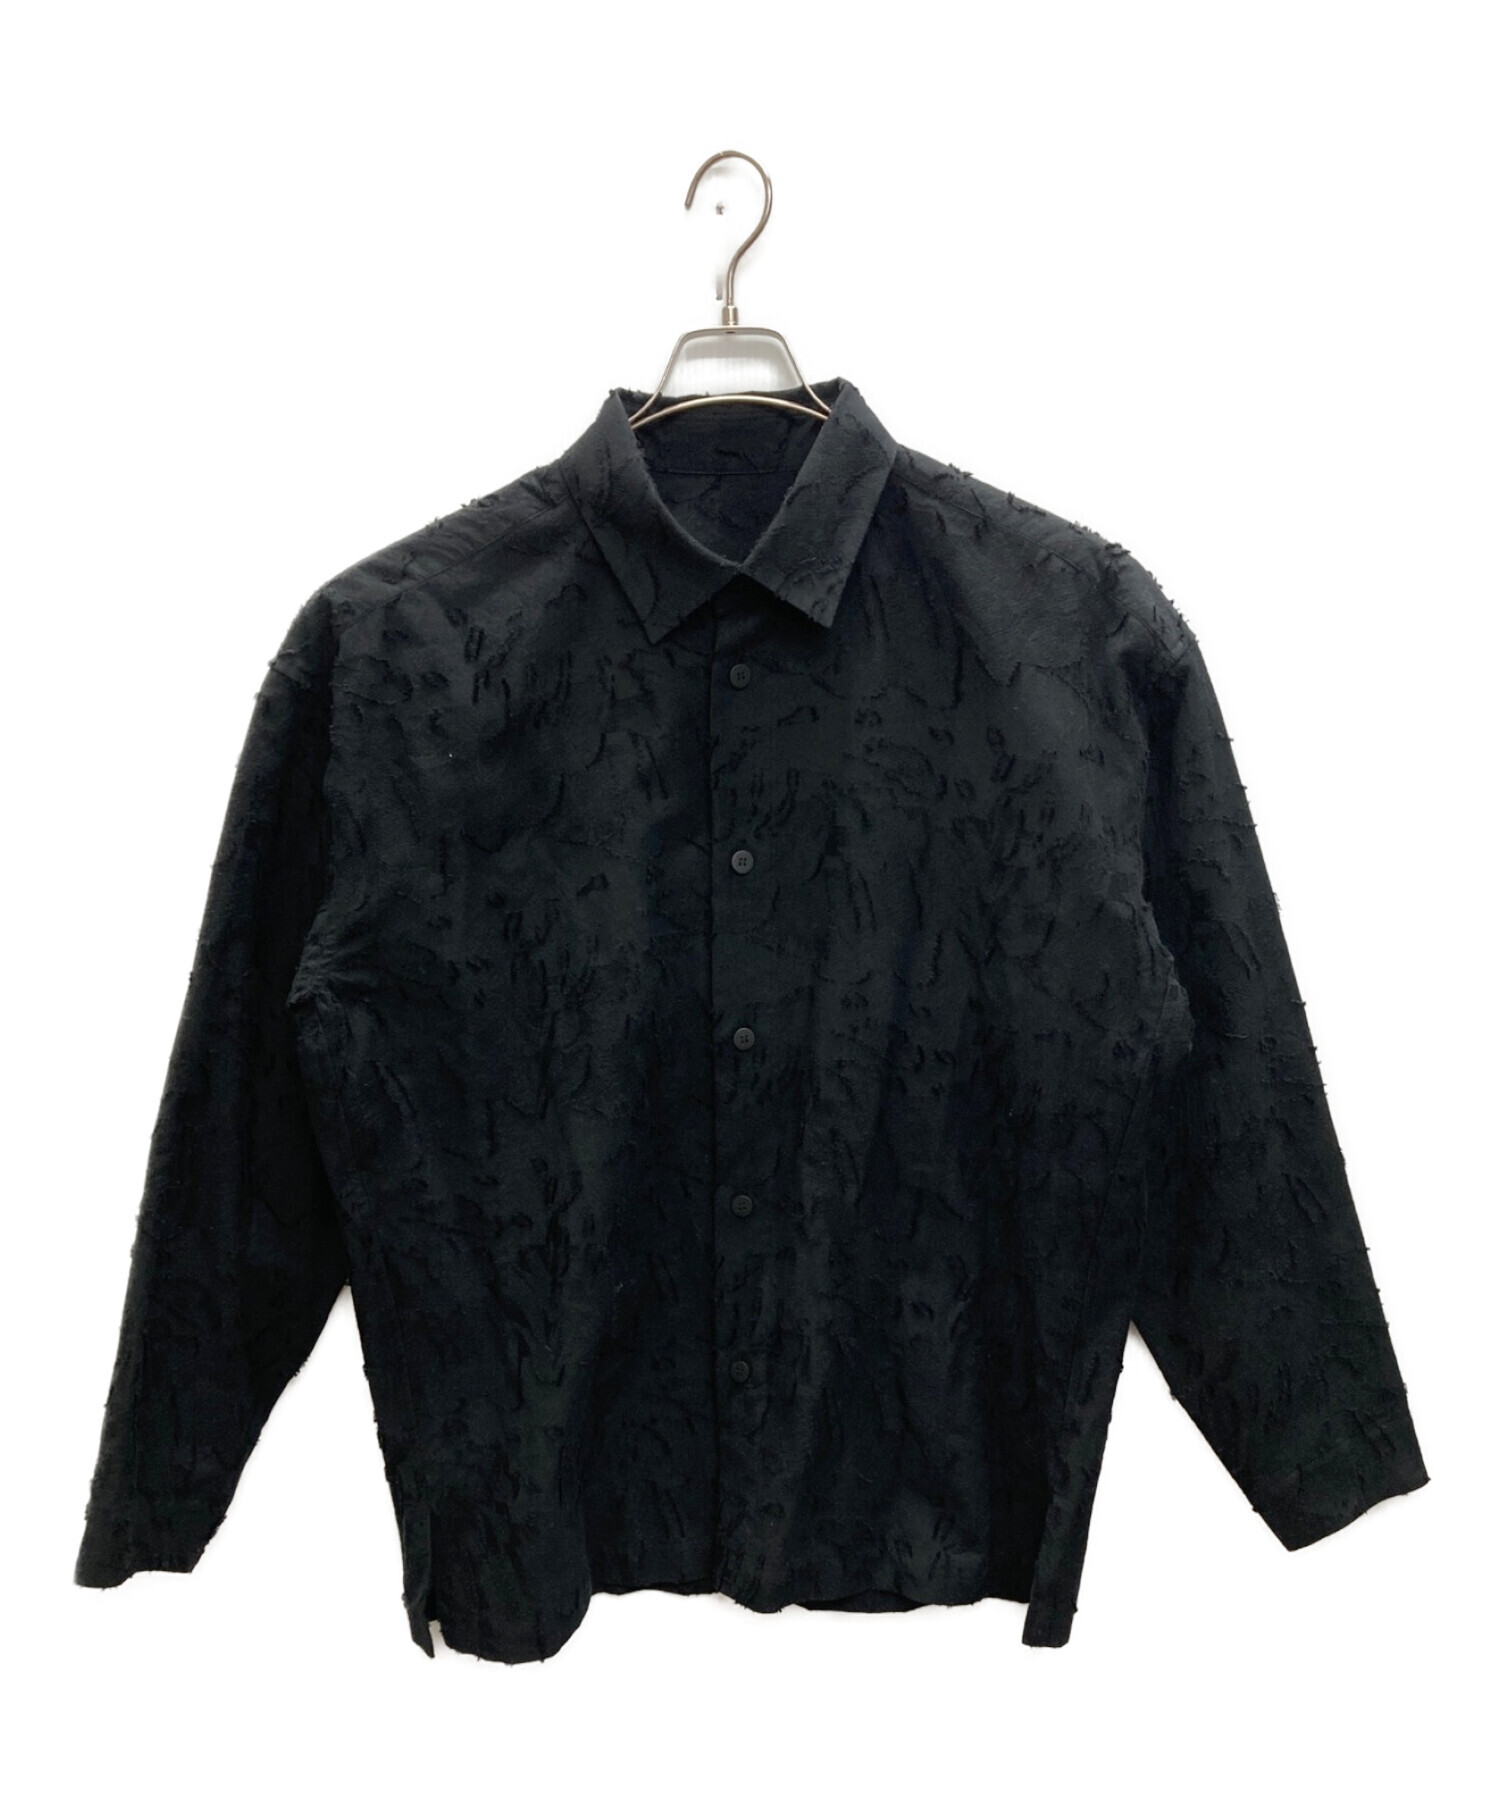 ISSEY MIYAKE MEN (イッセイミヤケメン) FEATHERSレギュラーカラーシャツ ブラック サイズ:SIZE4